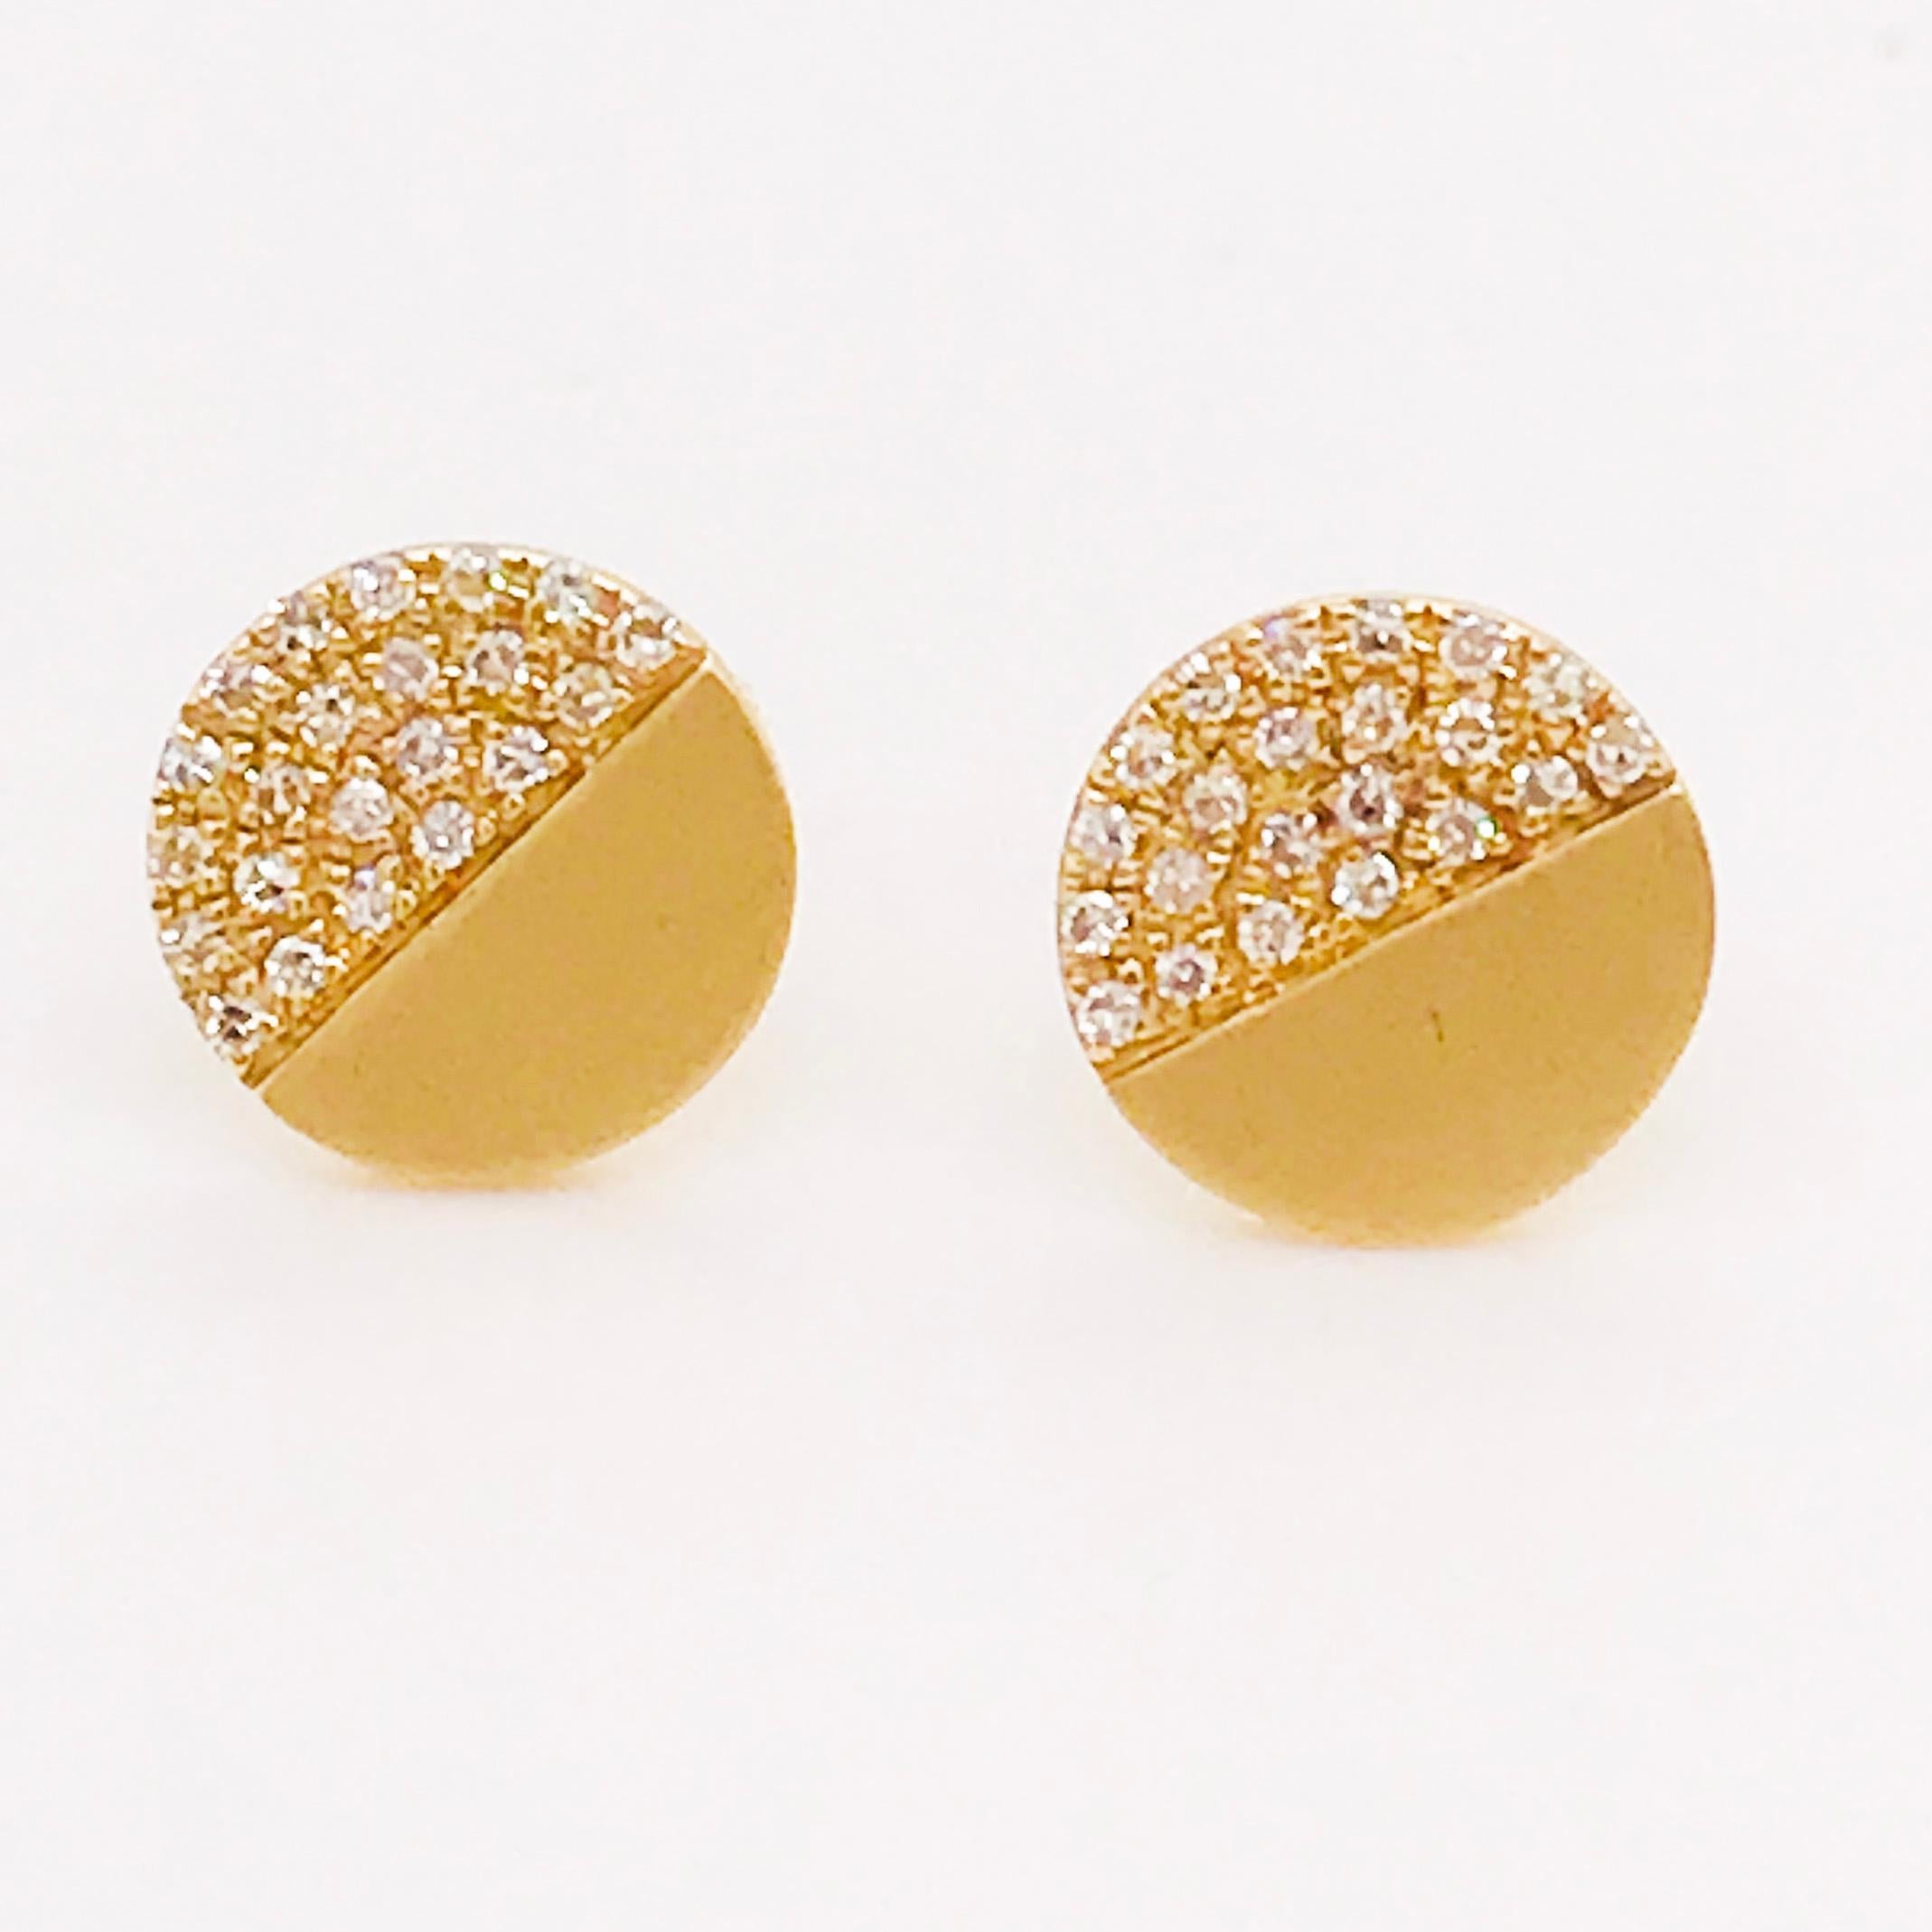 Die modernen Diamantohrstecker aus gebürstetem Gold sind ein wahres Kompliment für Sie. Diese Ohrstecker haben ein halb-halb Design, bei dem die Hälfte der Scheibe mit runden Brillanten besetzt ist und die andere Hälfte der Scheibe ein